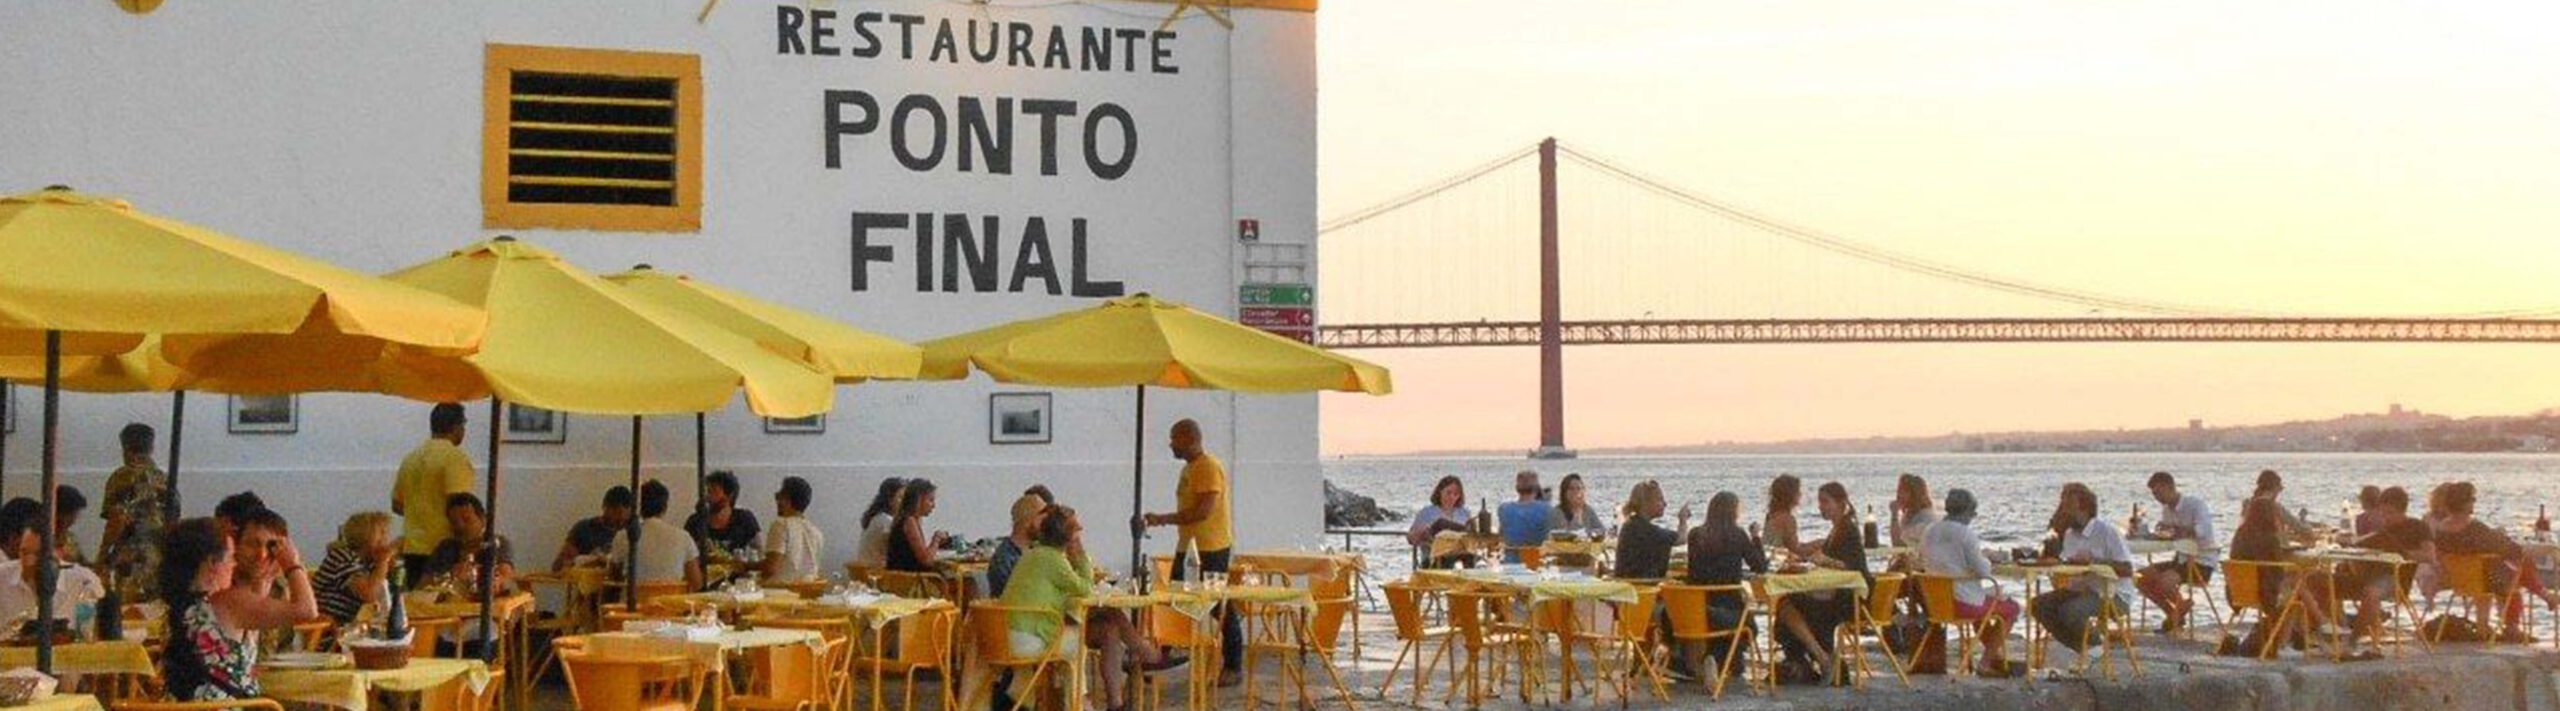 Ponto Final Restaurant Portugal